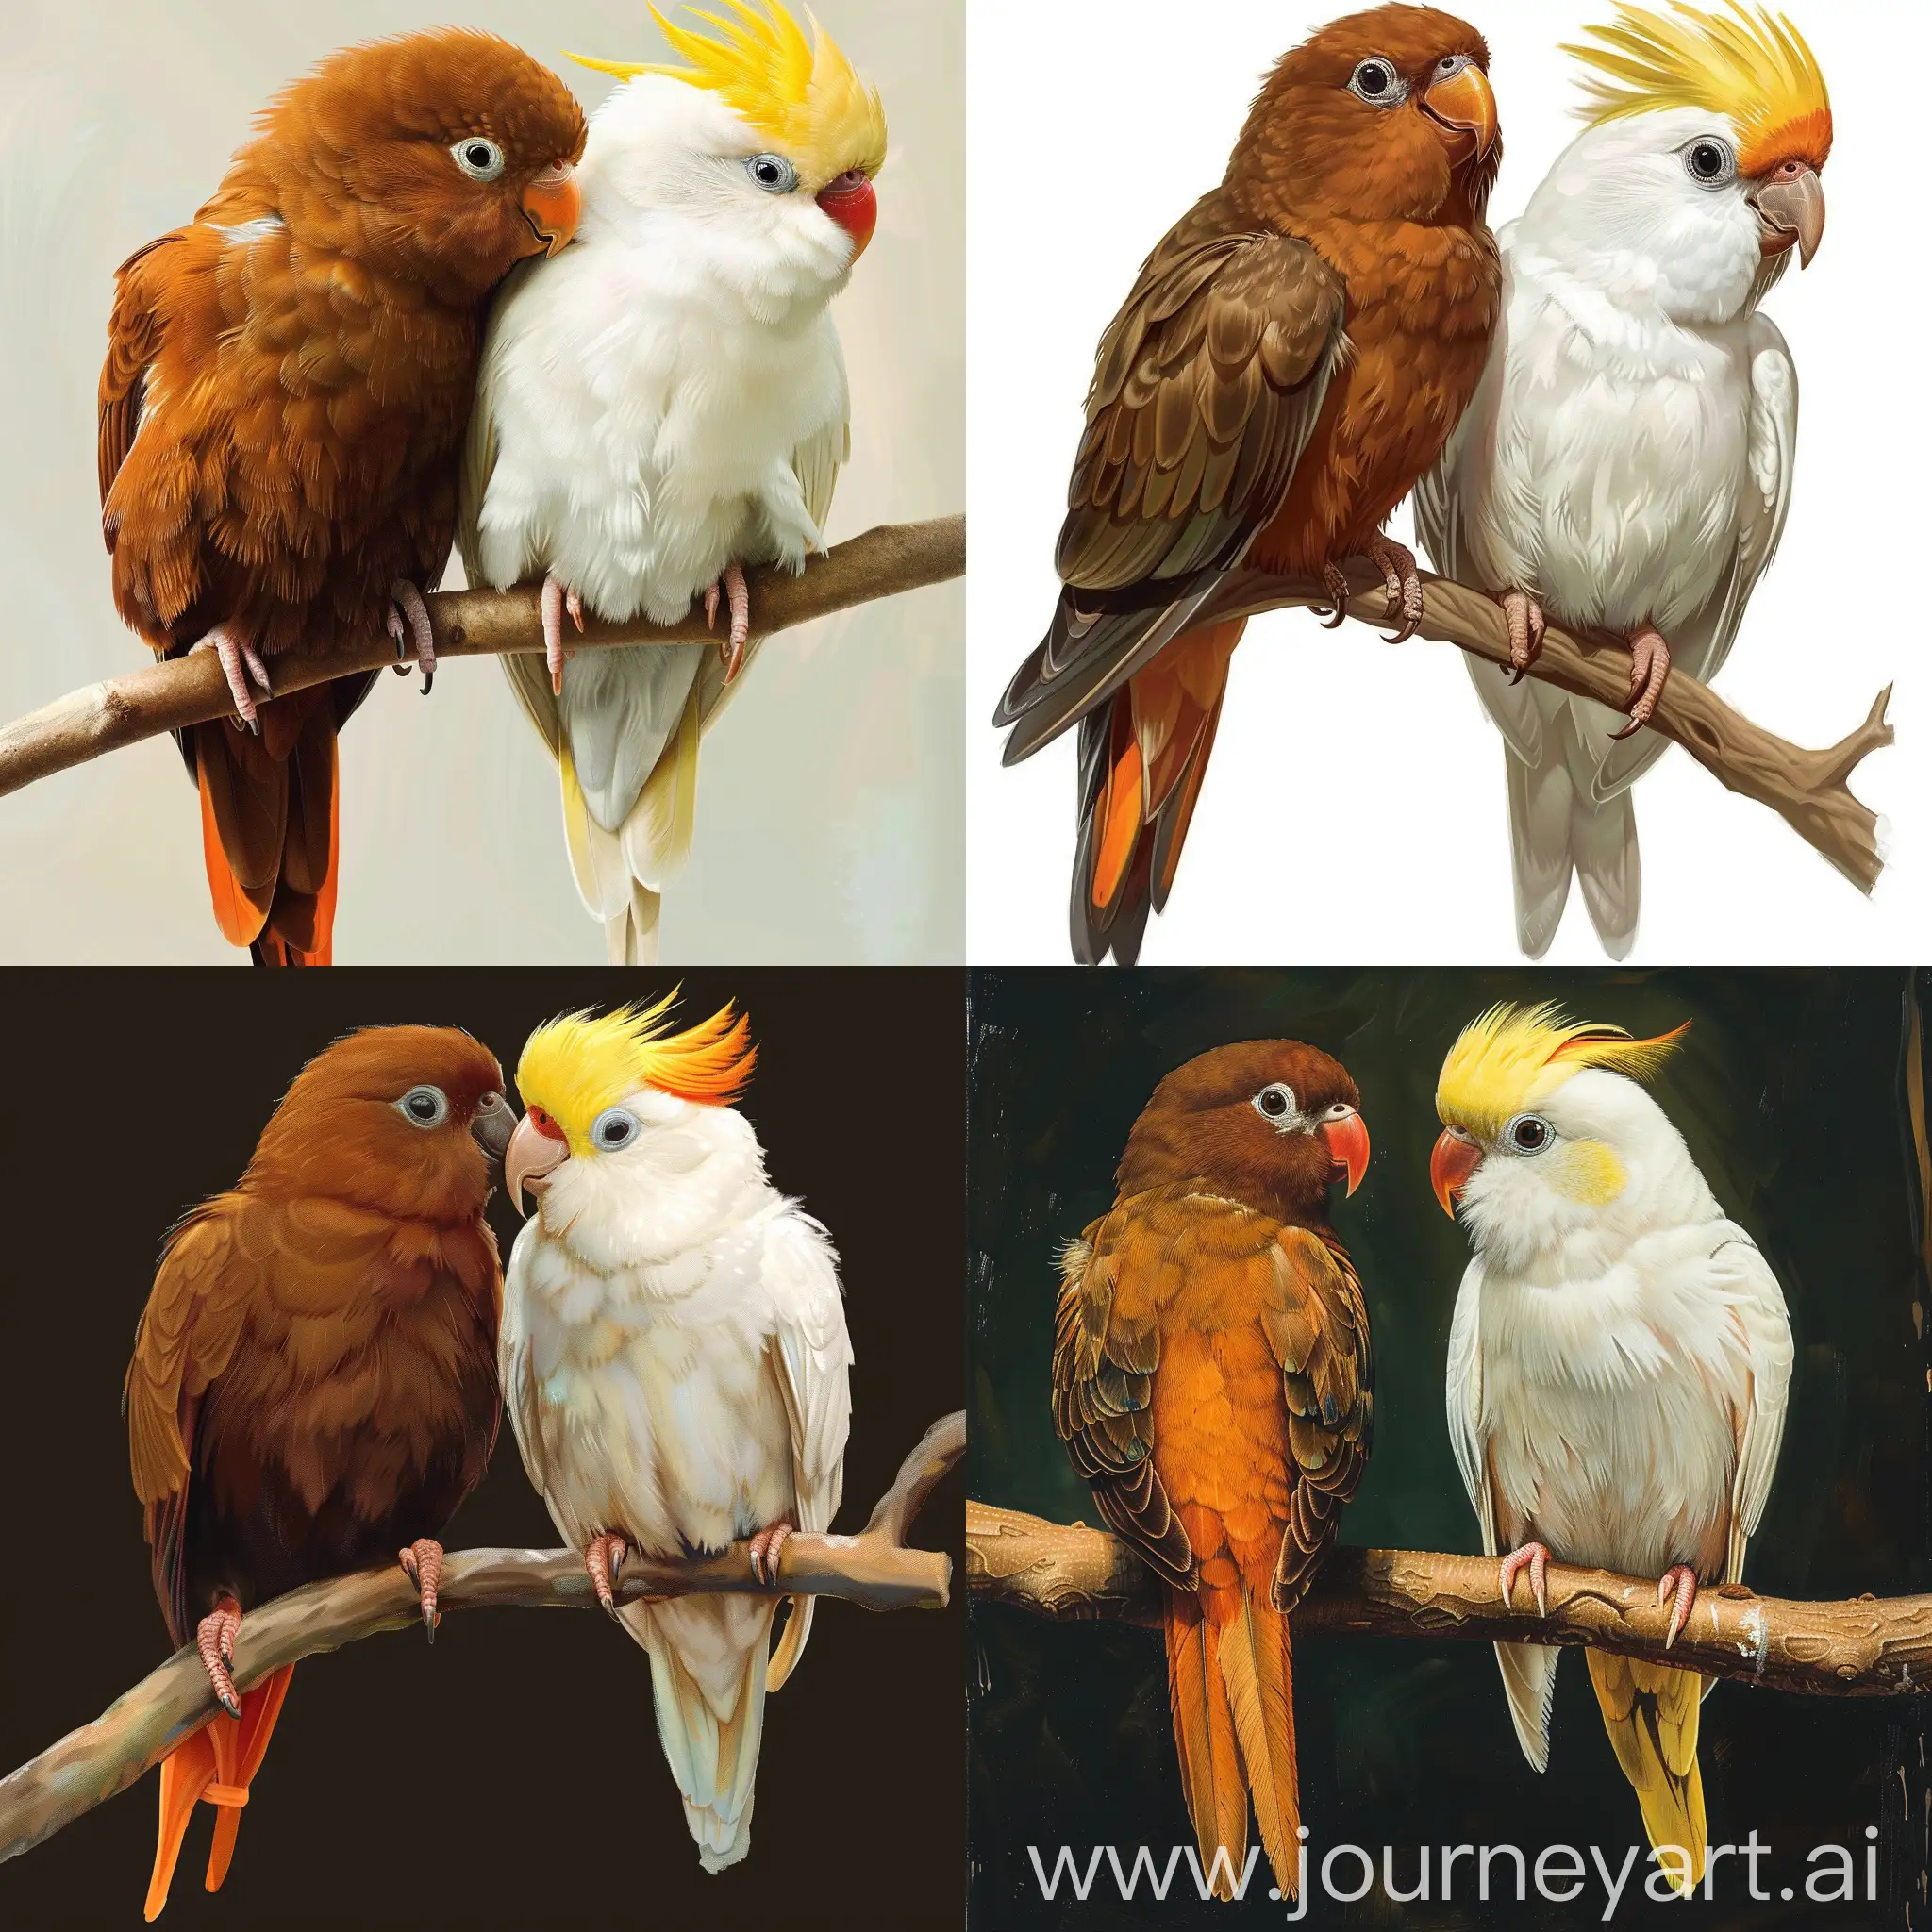 Реалистичное изображение двух влюбленных попугаев, сидящих на веточке: один коричневый, его перья на конце хвоста и крыльев плавно переходят в оранжевый цвет. А второй полностью белый, но с желтым хохолком на голове